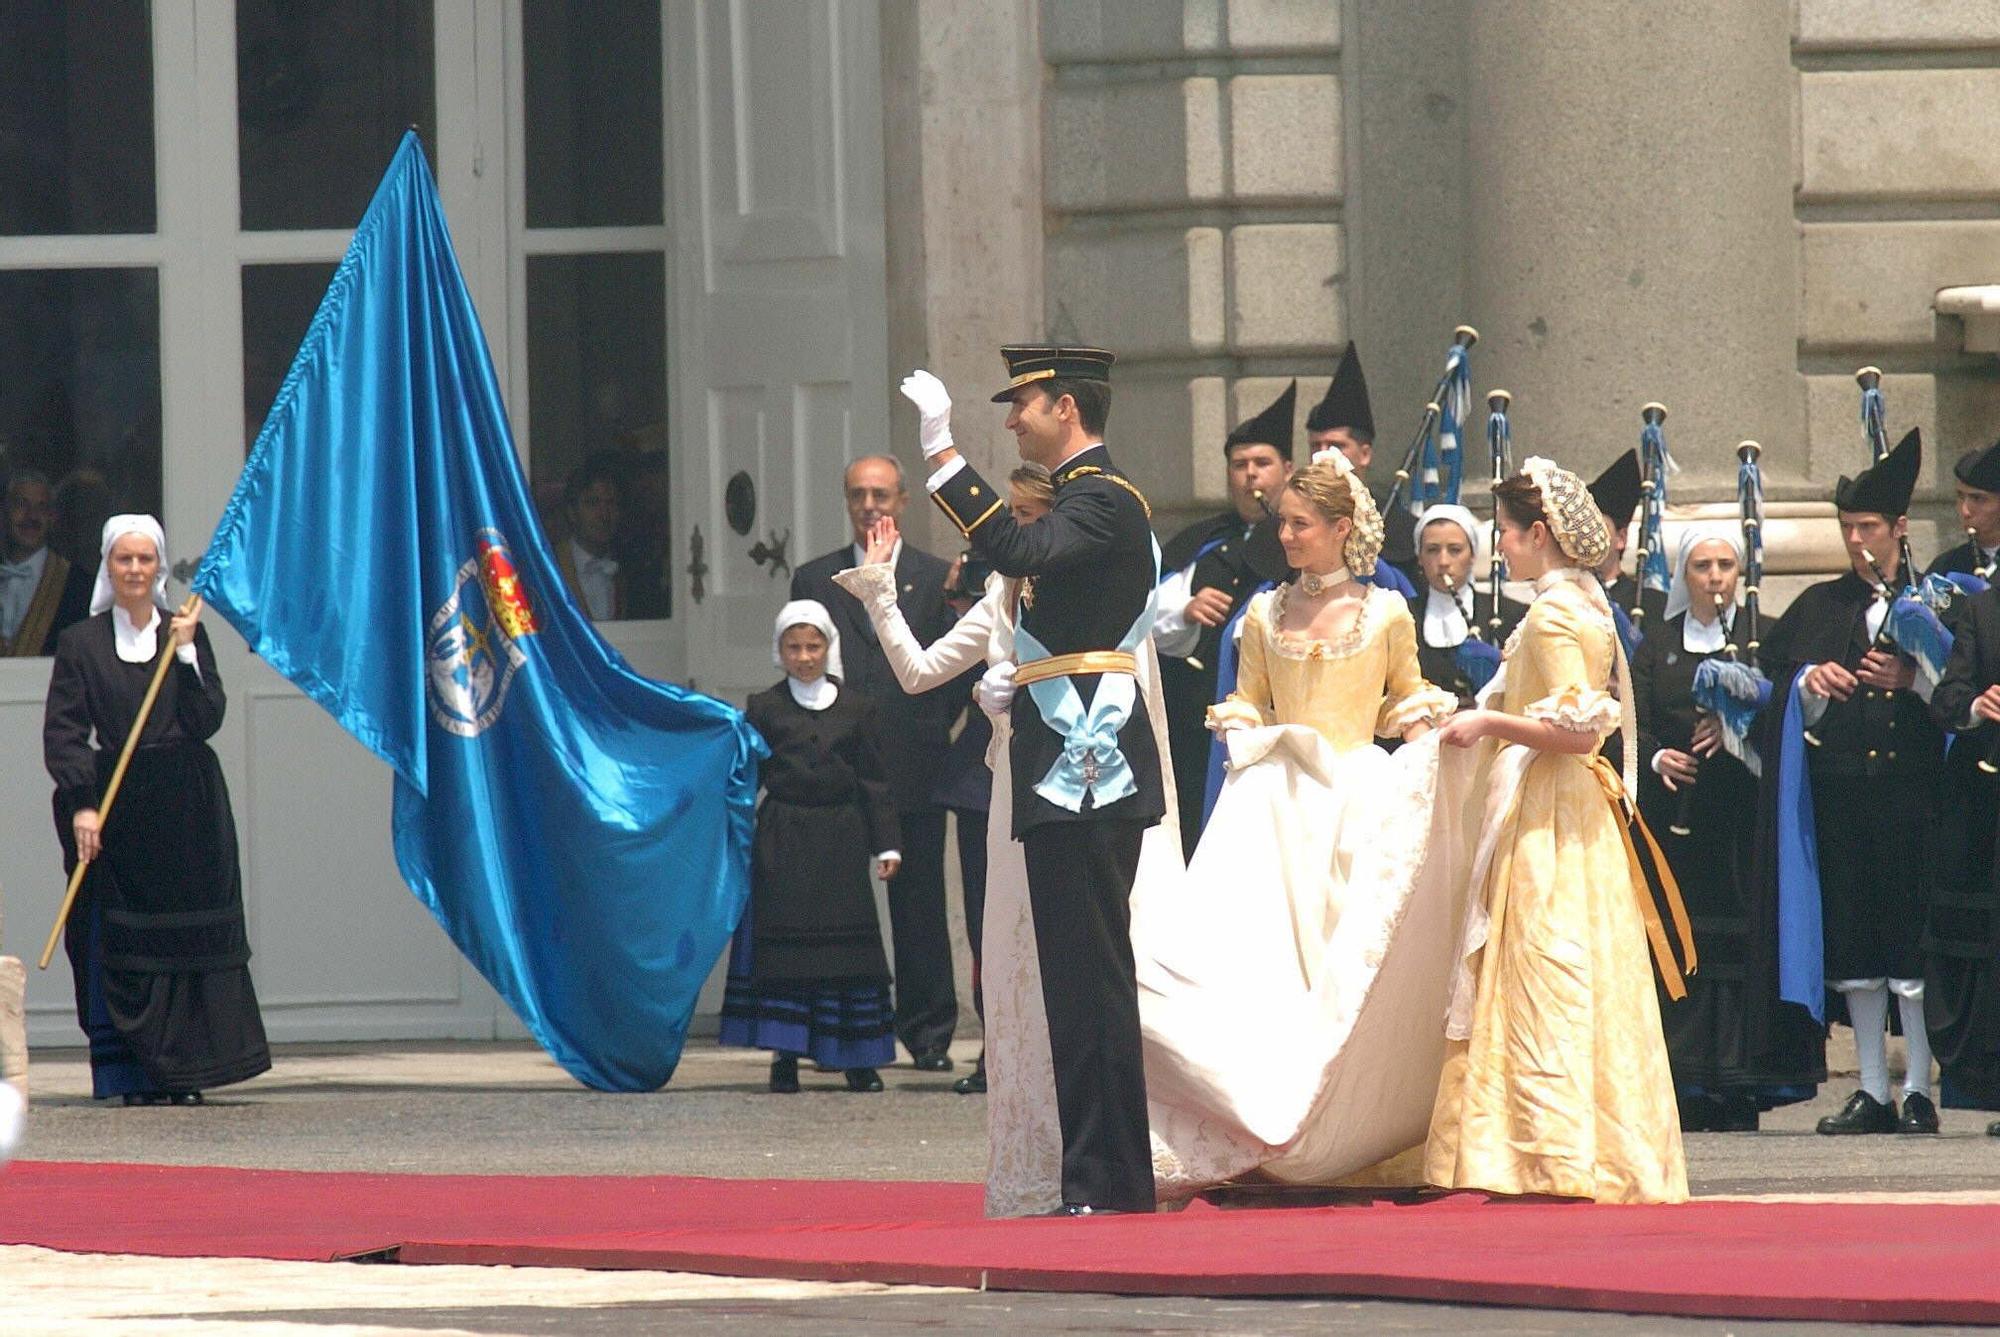 Así fue la boda real de Felipe y Letizia en 2004